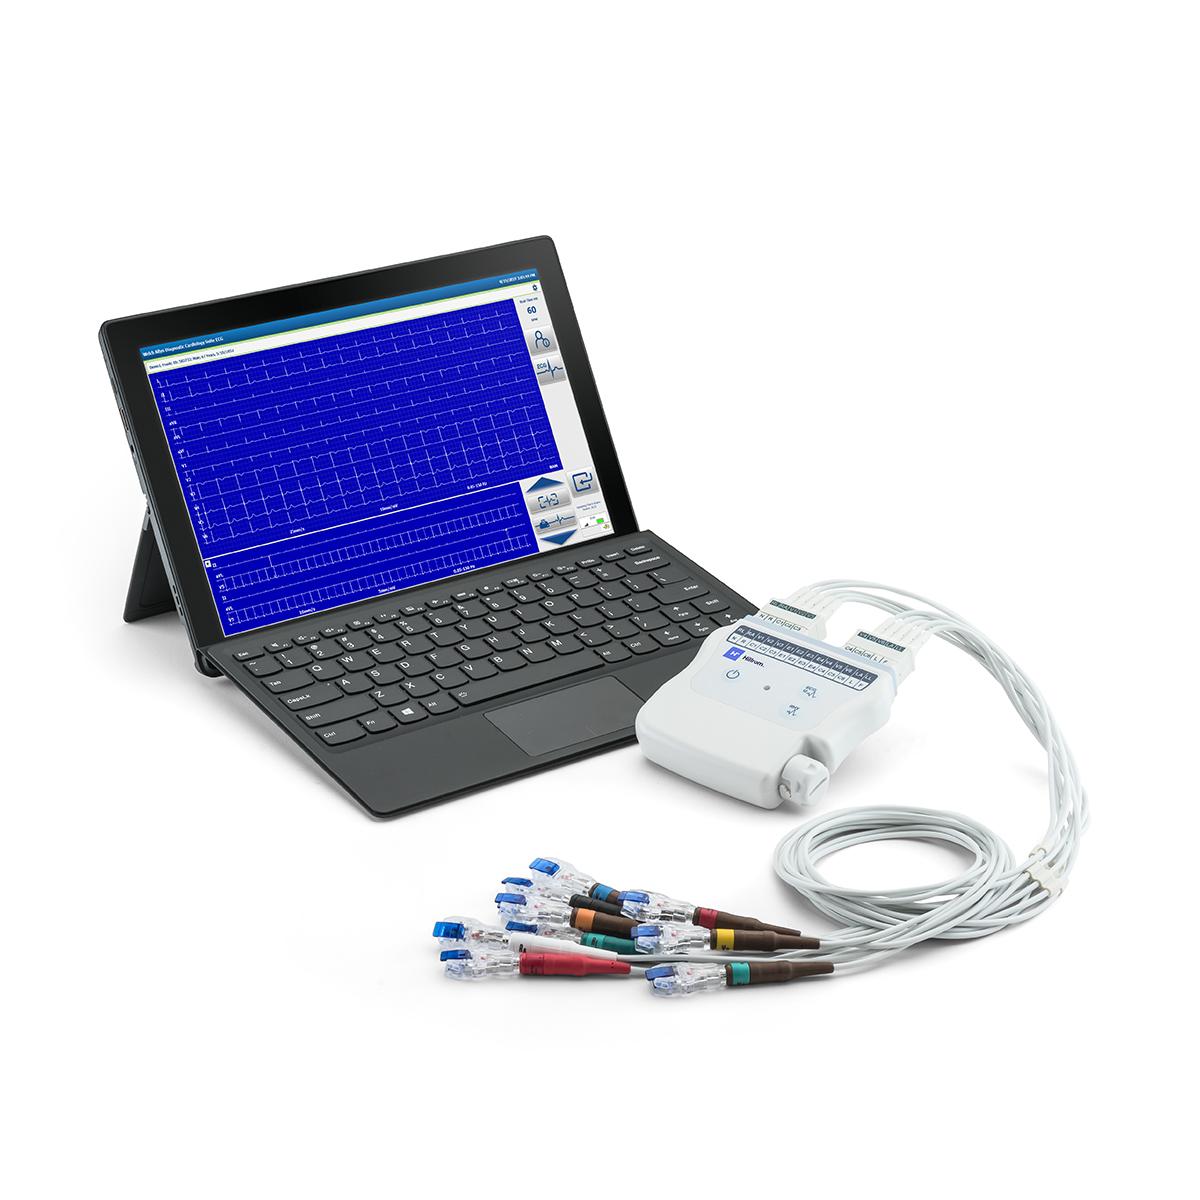 La Diagnostic Cardiology Suite et son module d’acquisition sans fil. L’écran de l’ordinateur portable affiche un examen d’ECG en cours.